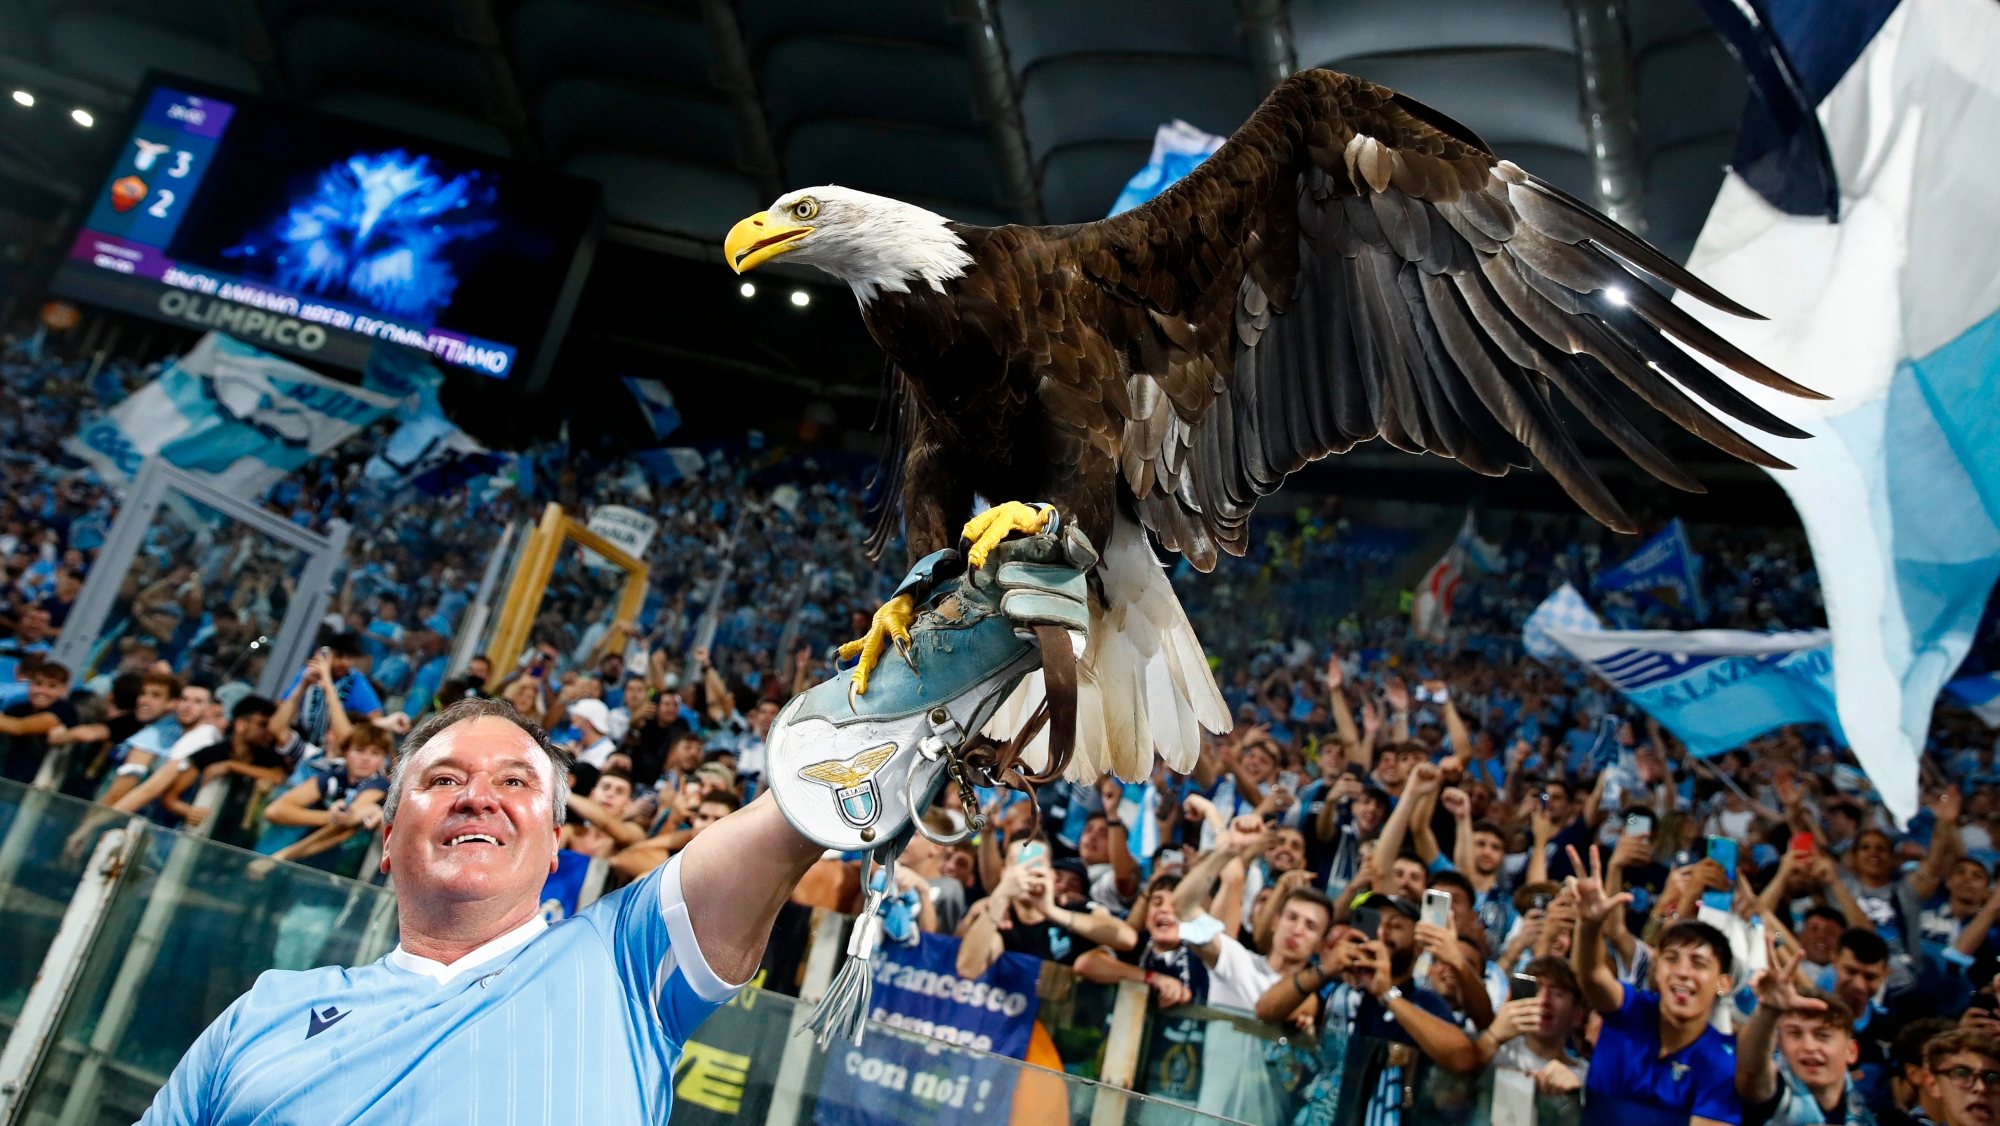 Juan Bernabé estava encarregue do voo da águia Olympia no Estádio Olímpico de Roma há pouco mais de uma década